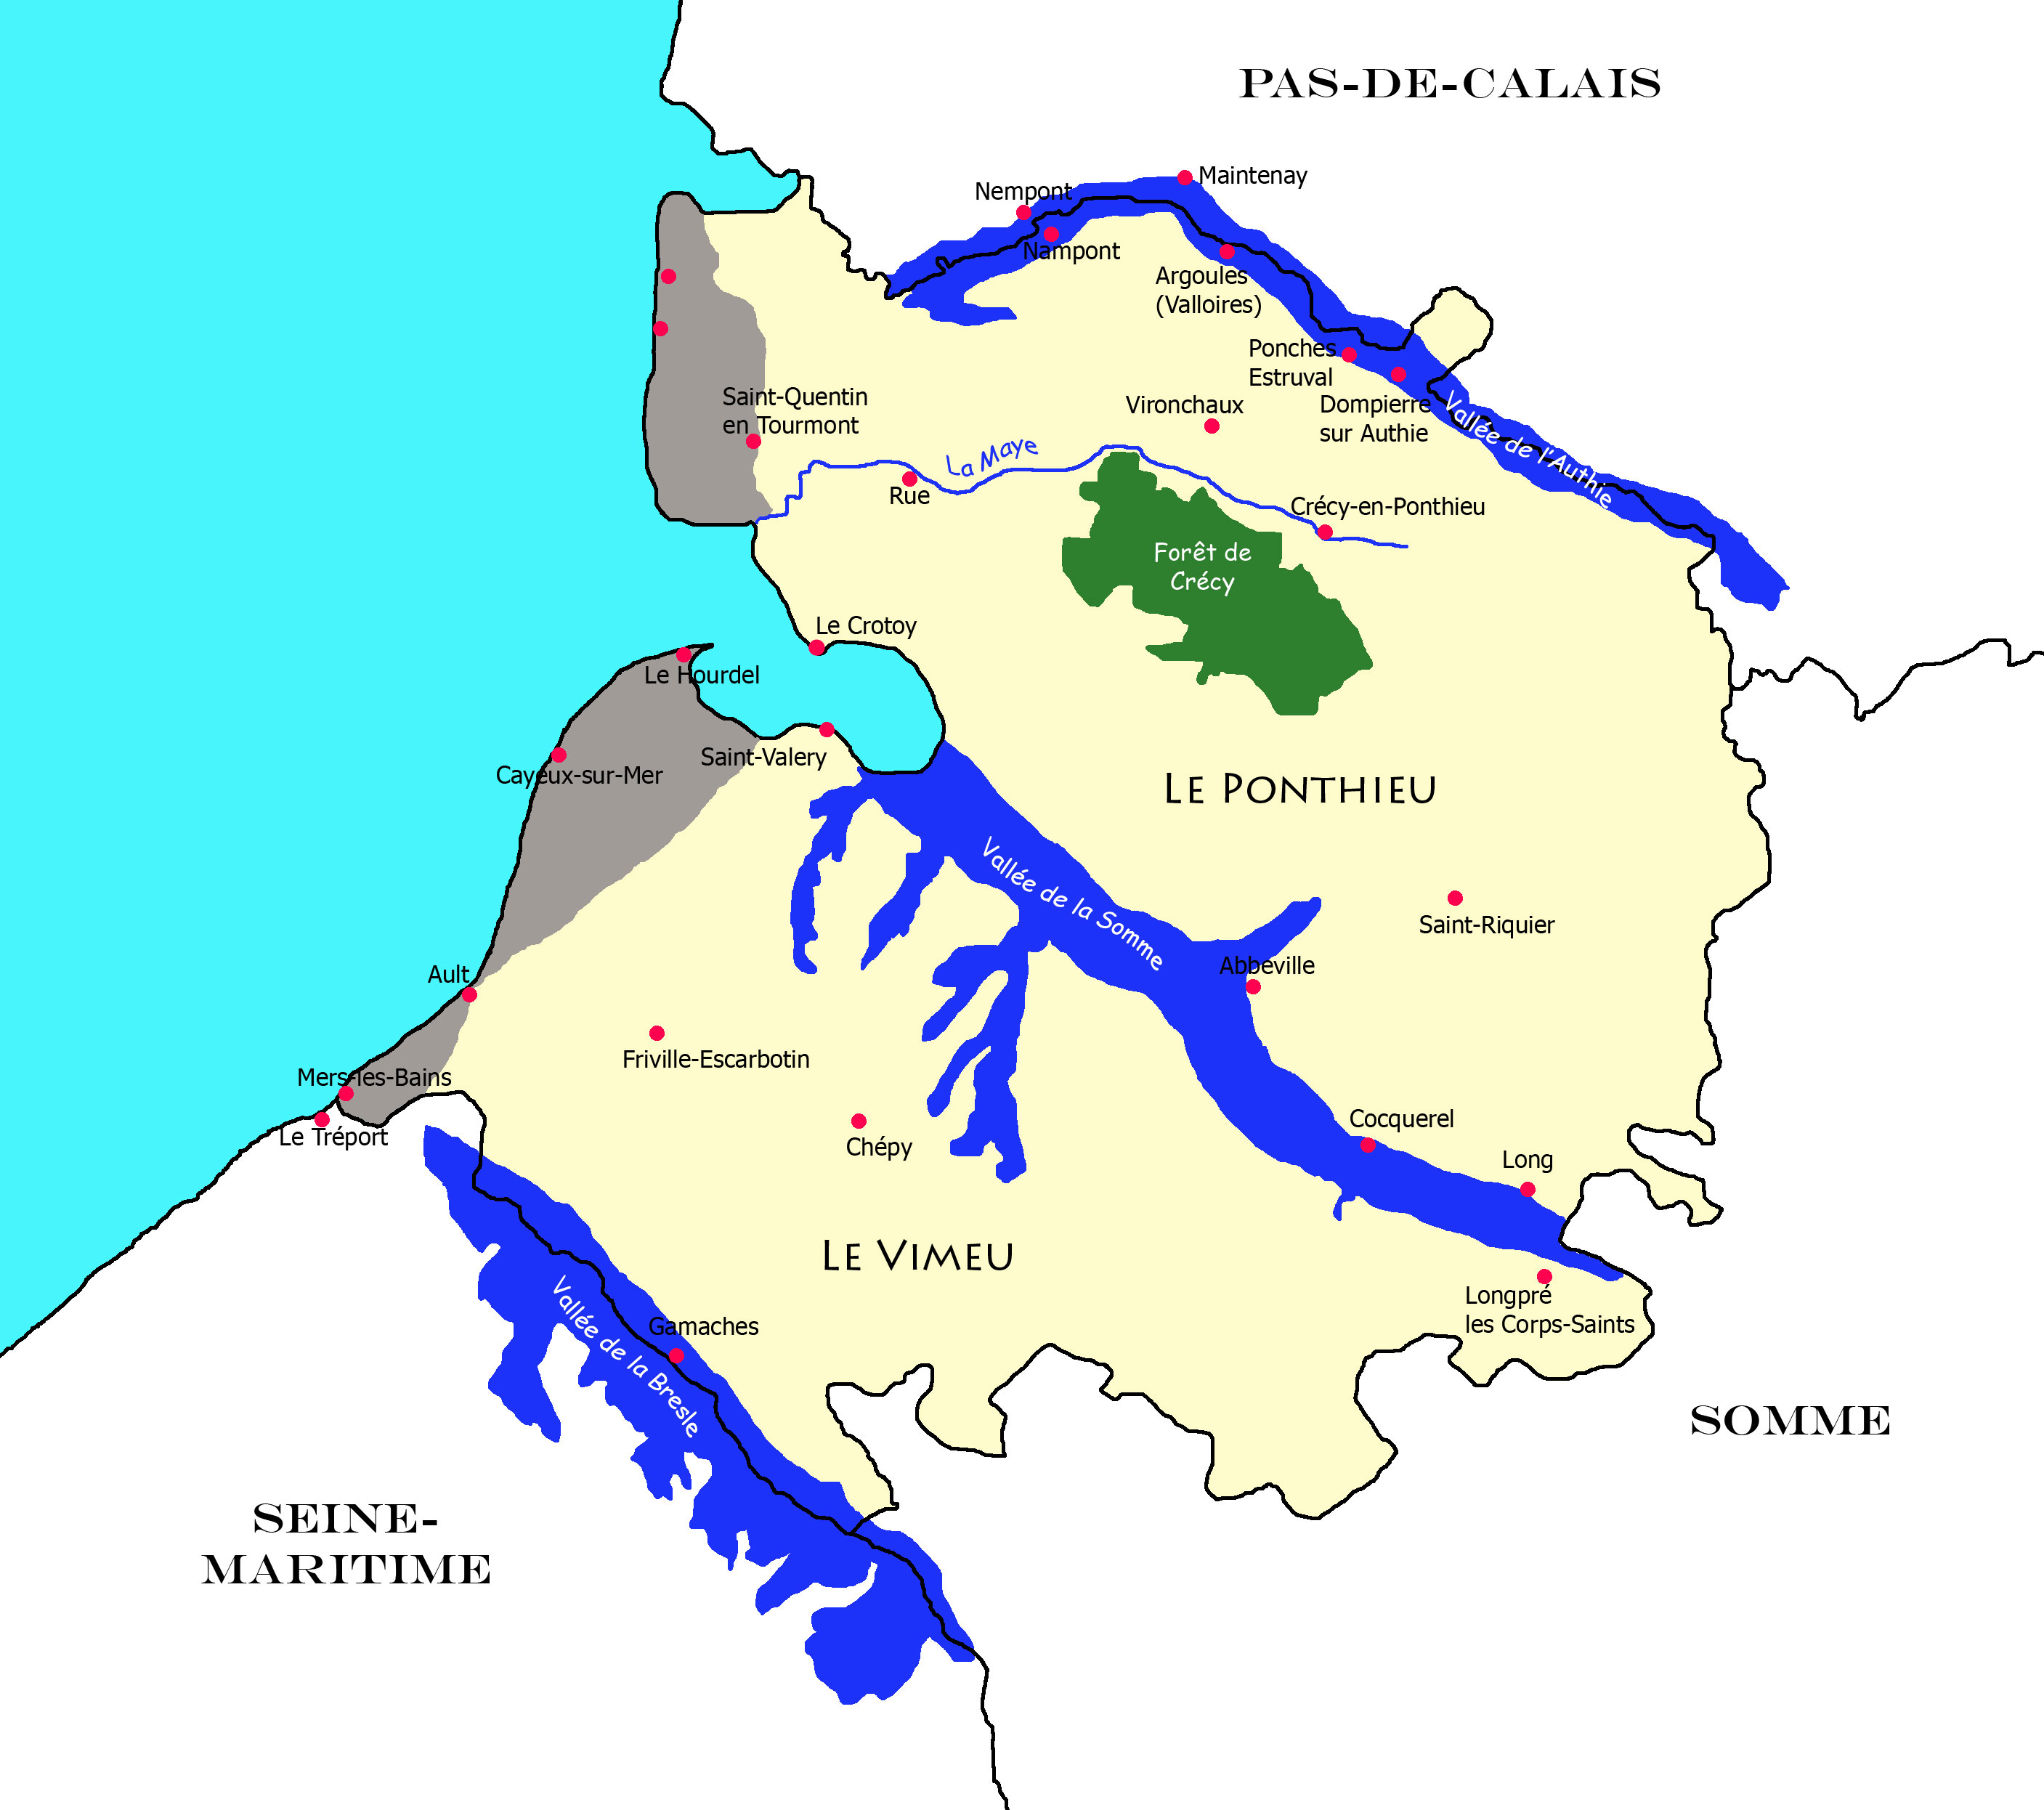 Carte de la Picardie Maritime (Somme)